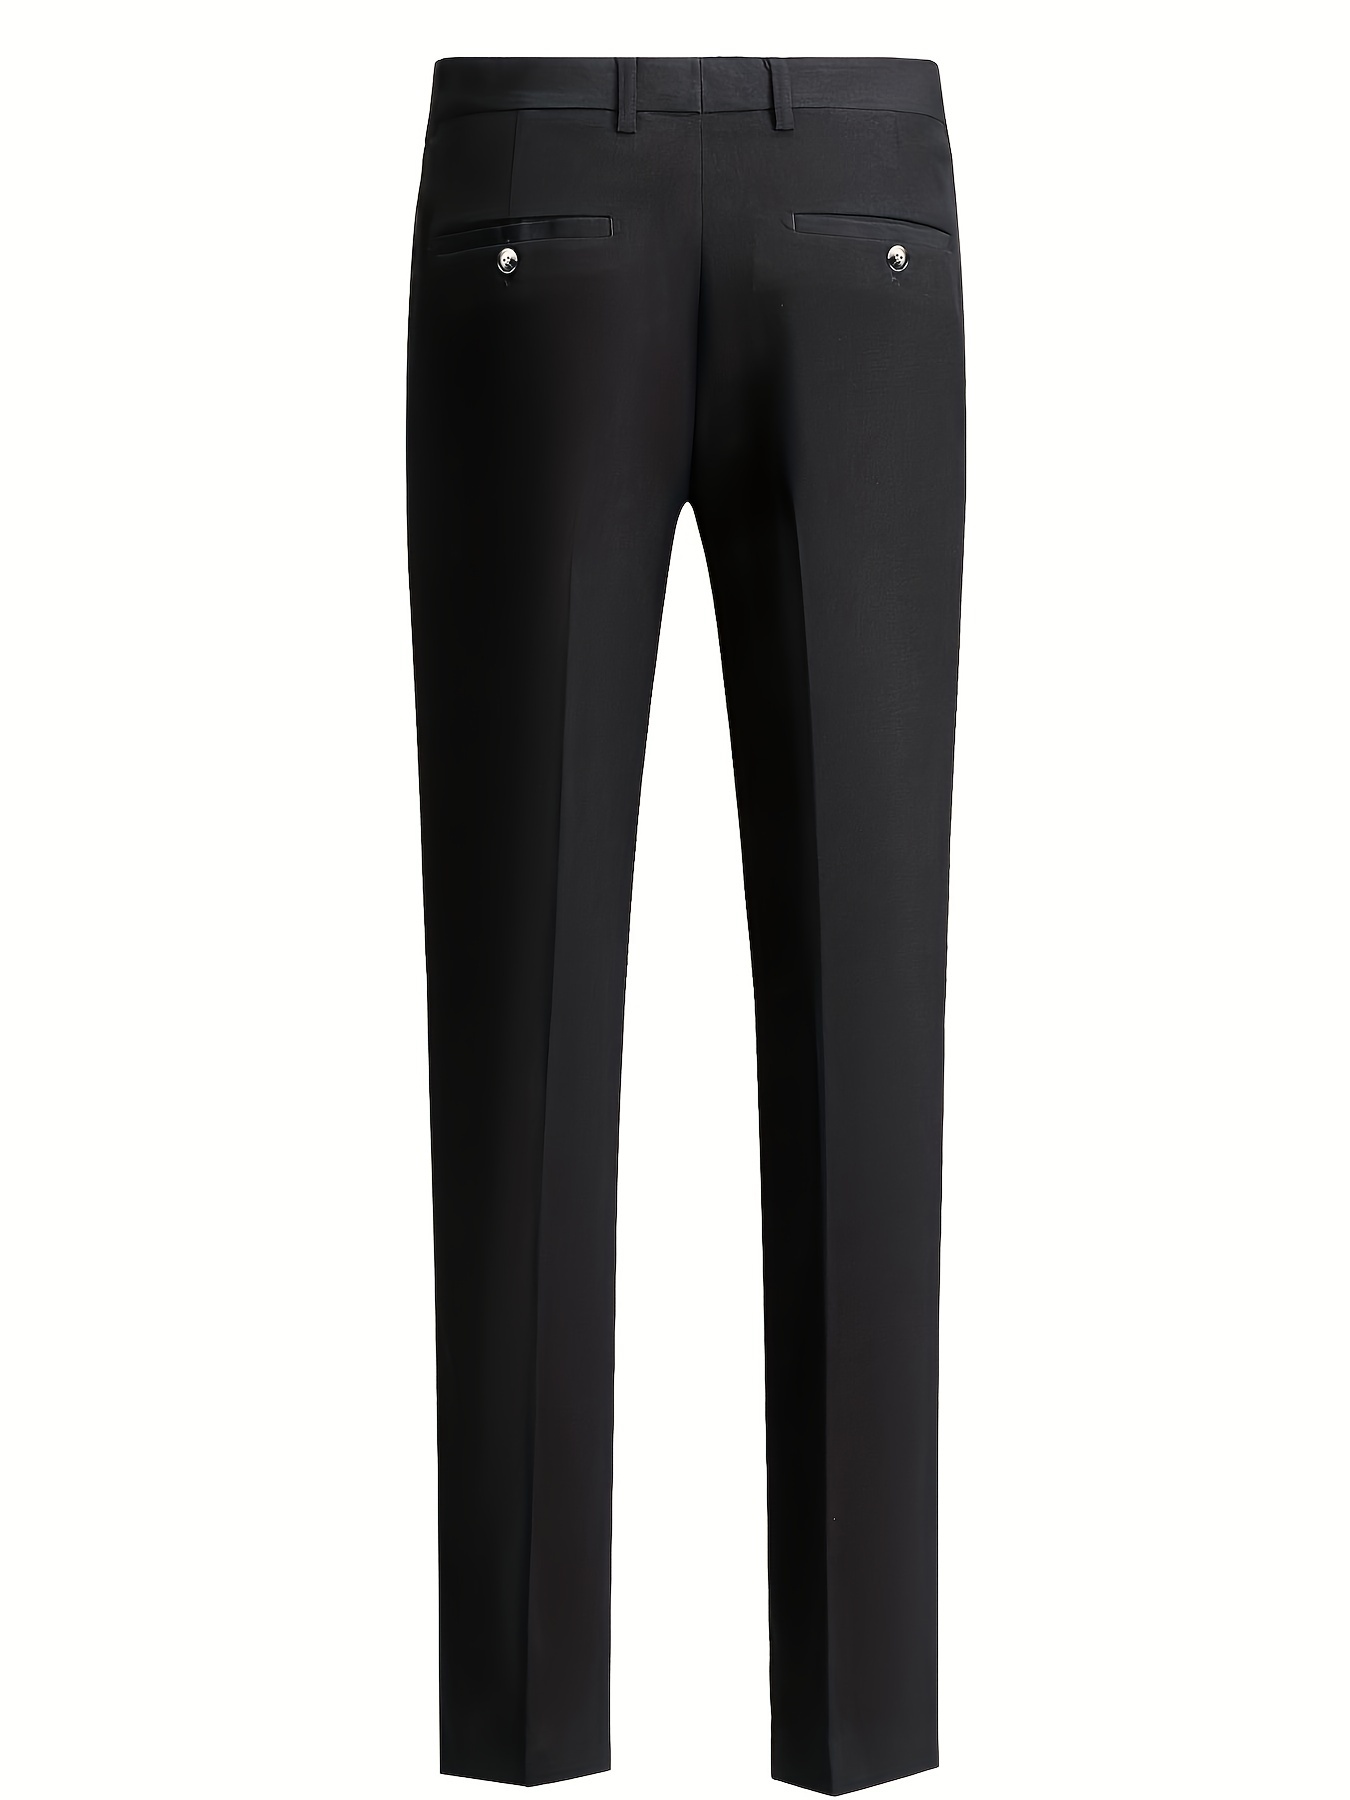 Classic Design Dress Pants Men's Formal Plain Black Slim Fit - Temu